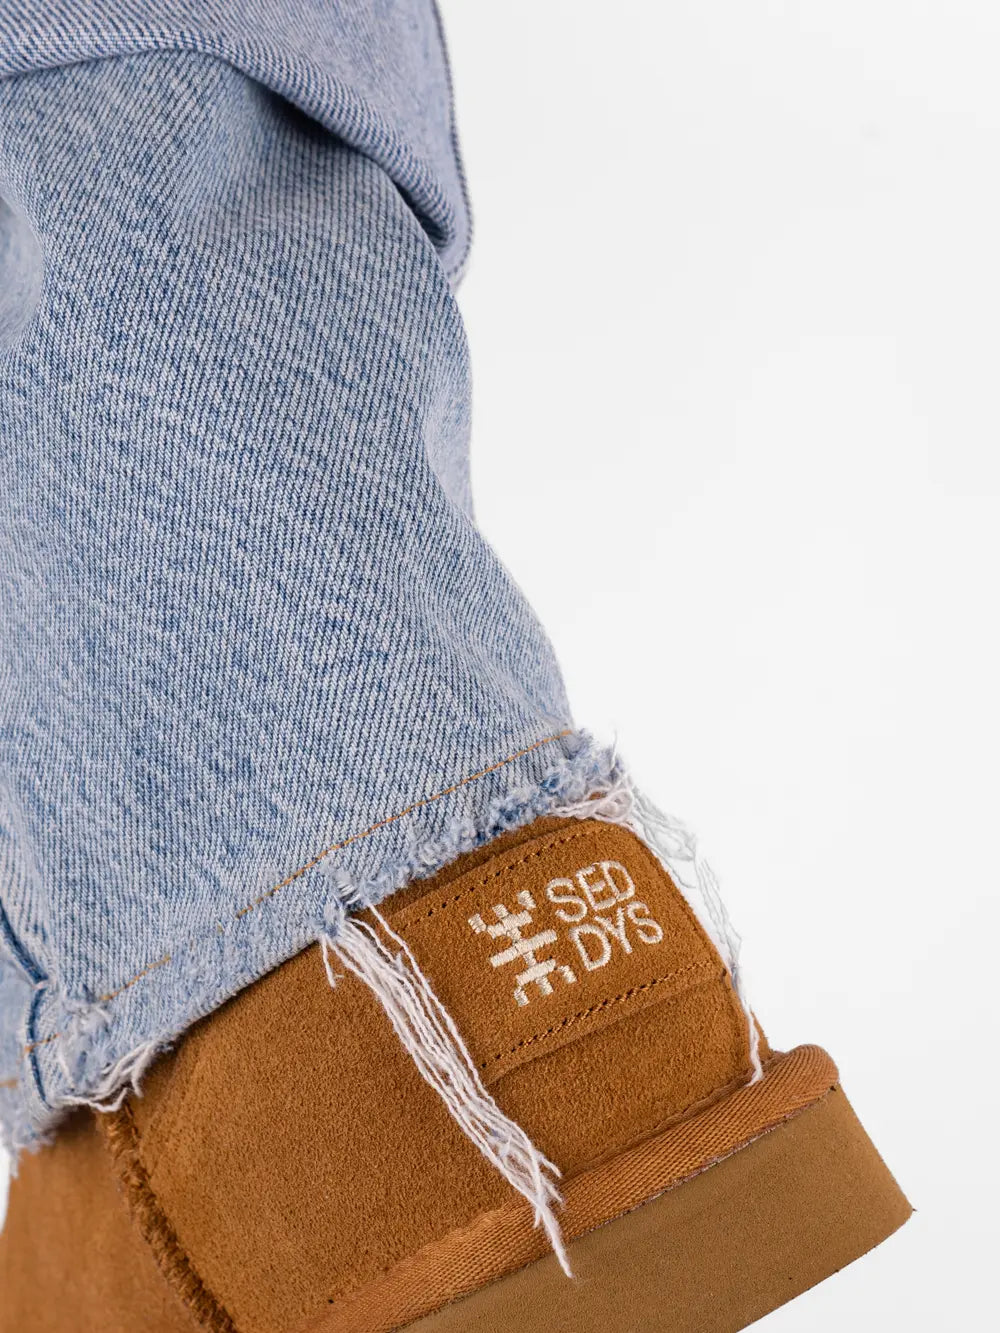 Stivaletto marrone chiaro personalizzato da SEDDYS con tessuto jeans riciclato